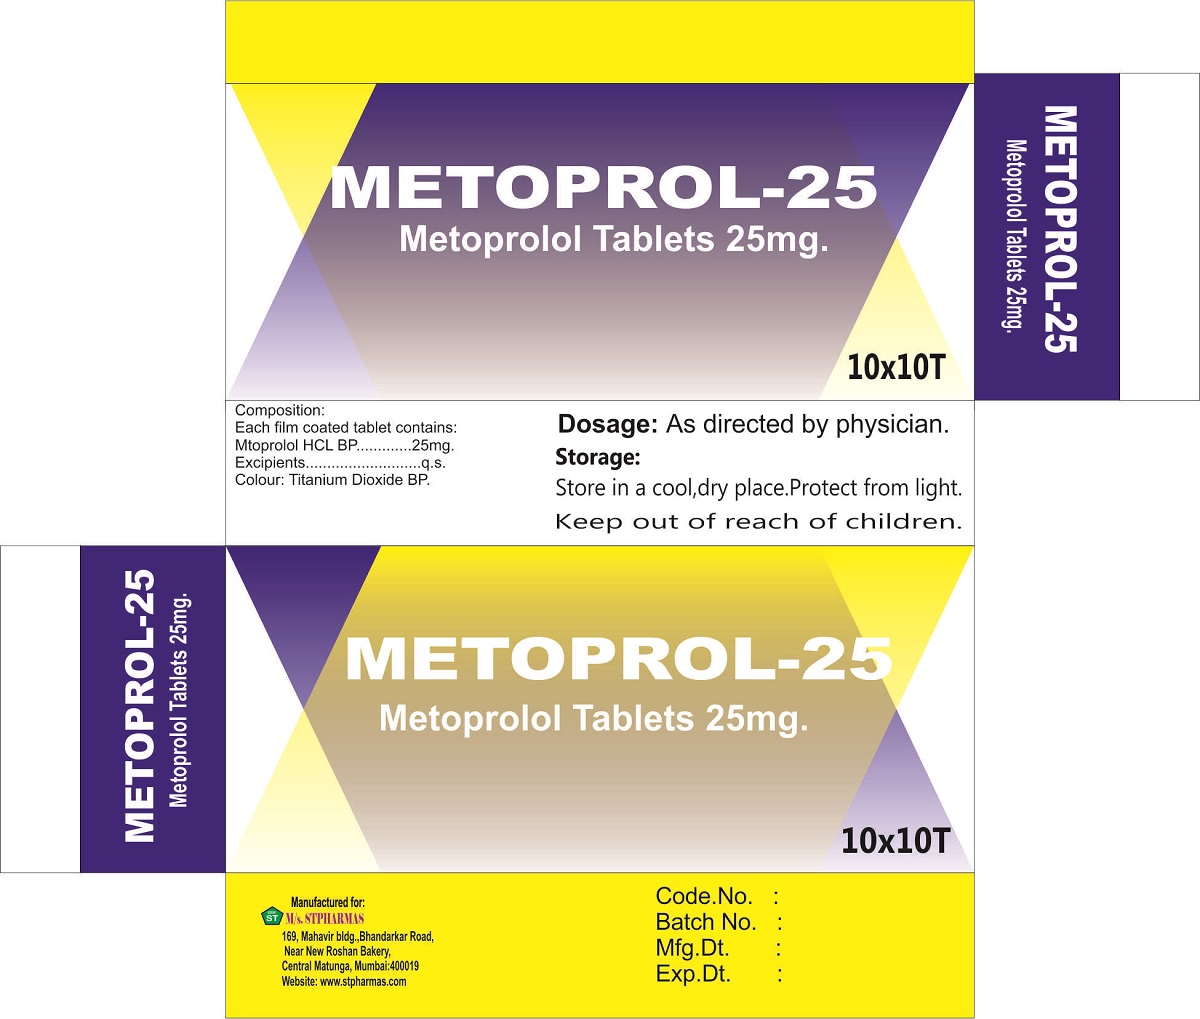 METOPROL-25